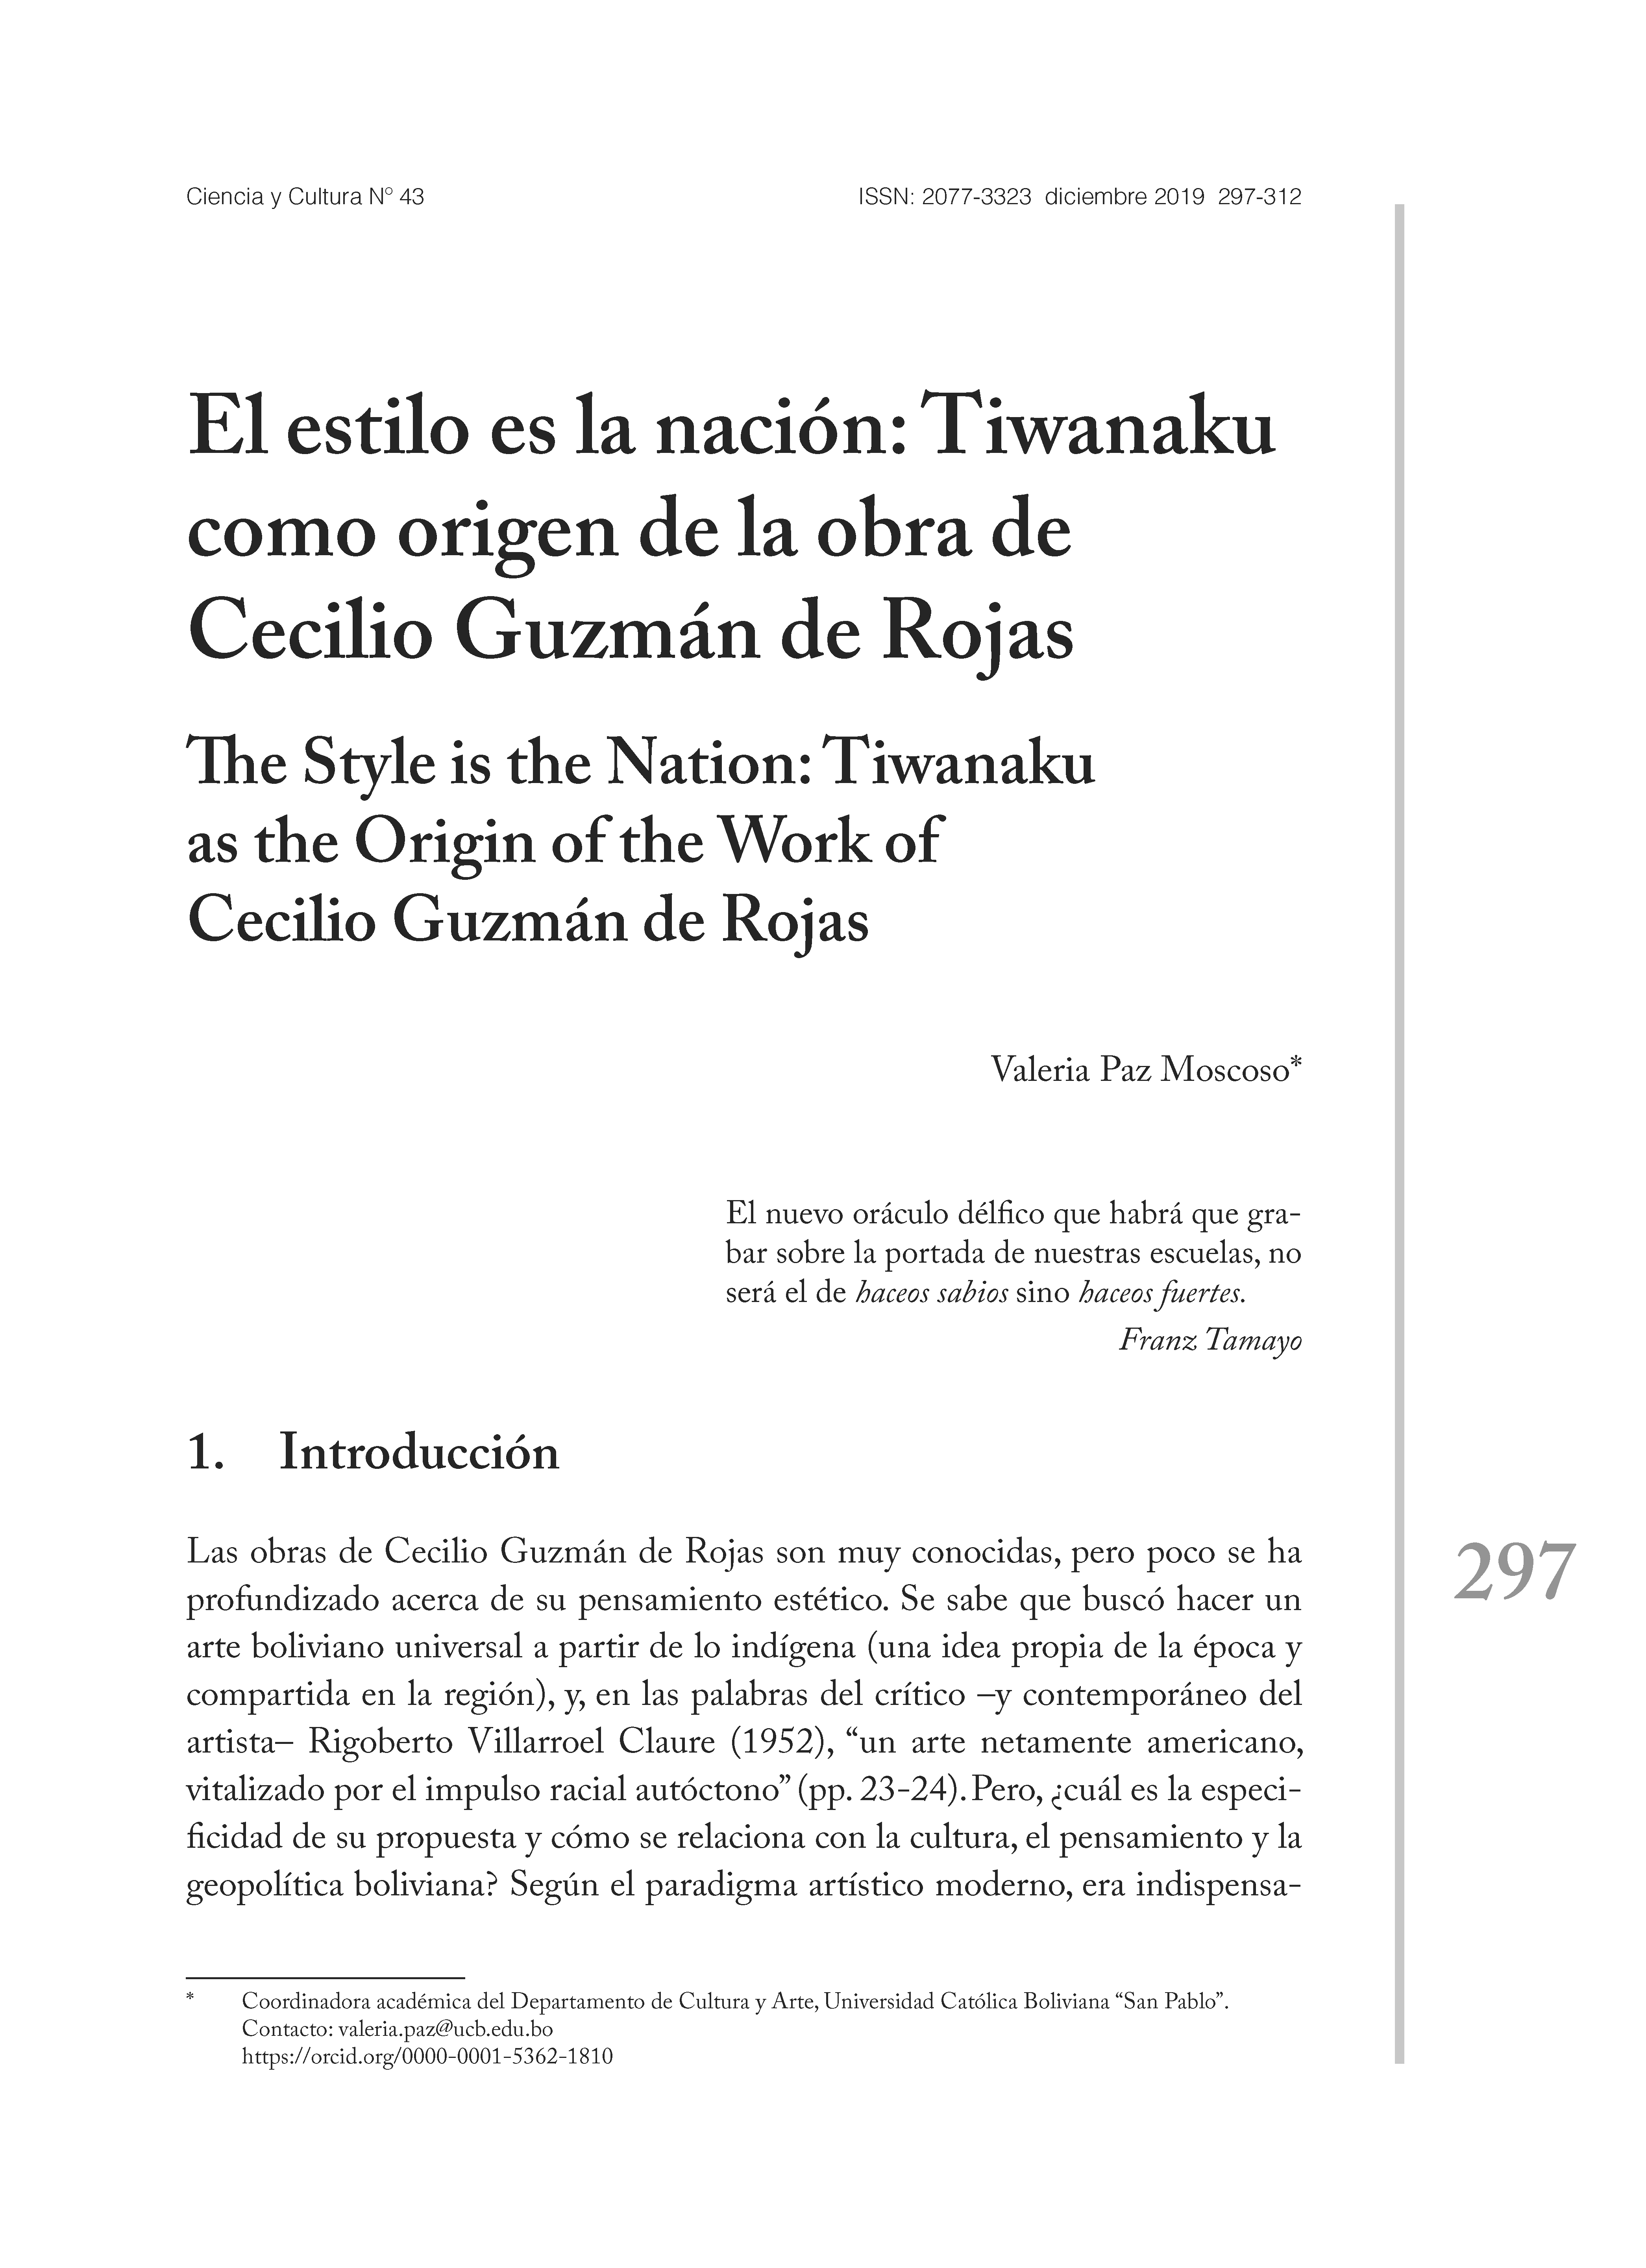 El estilo es la nación: Tiwanaku como origen de la obra de Cecilio Guzmán de Rojas